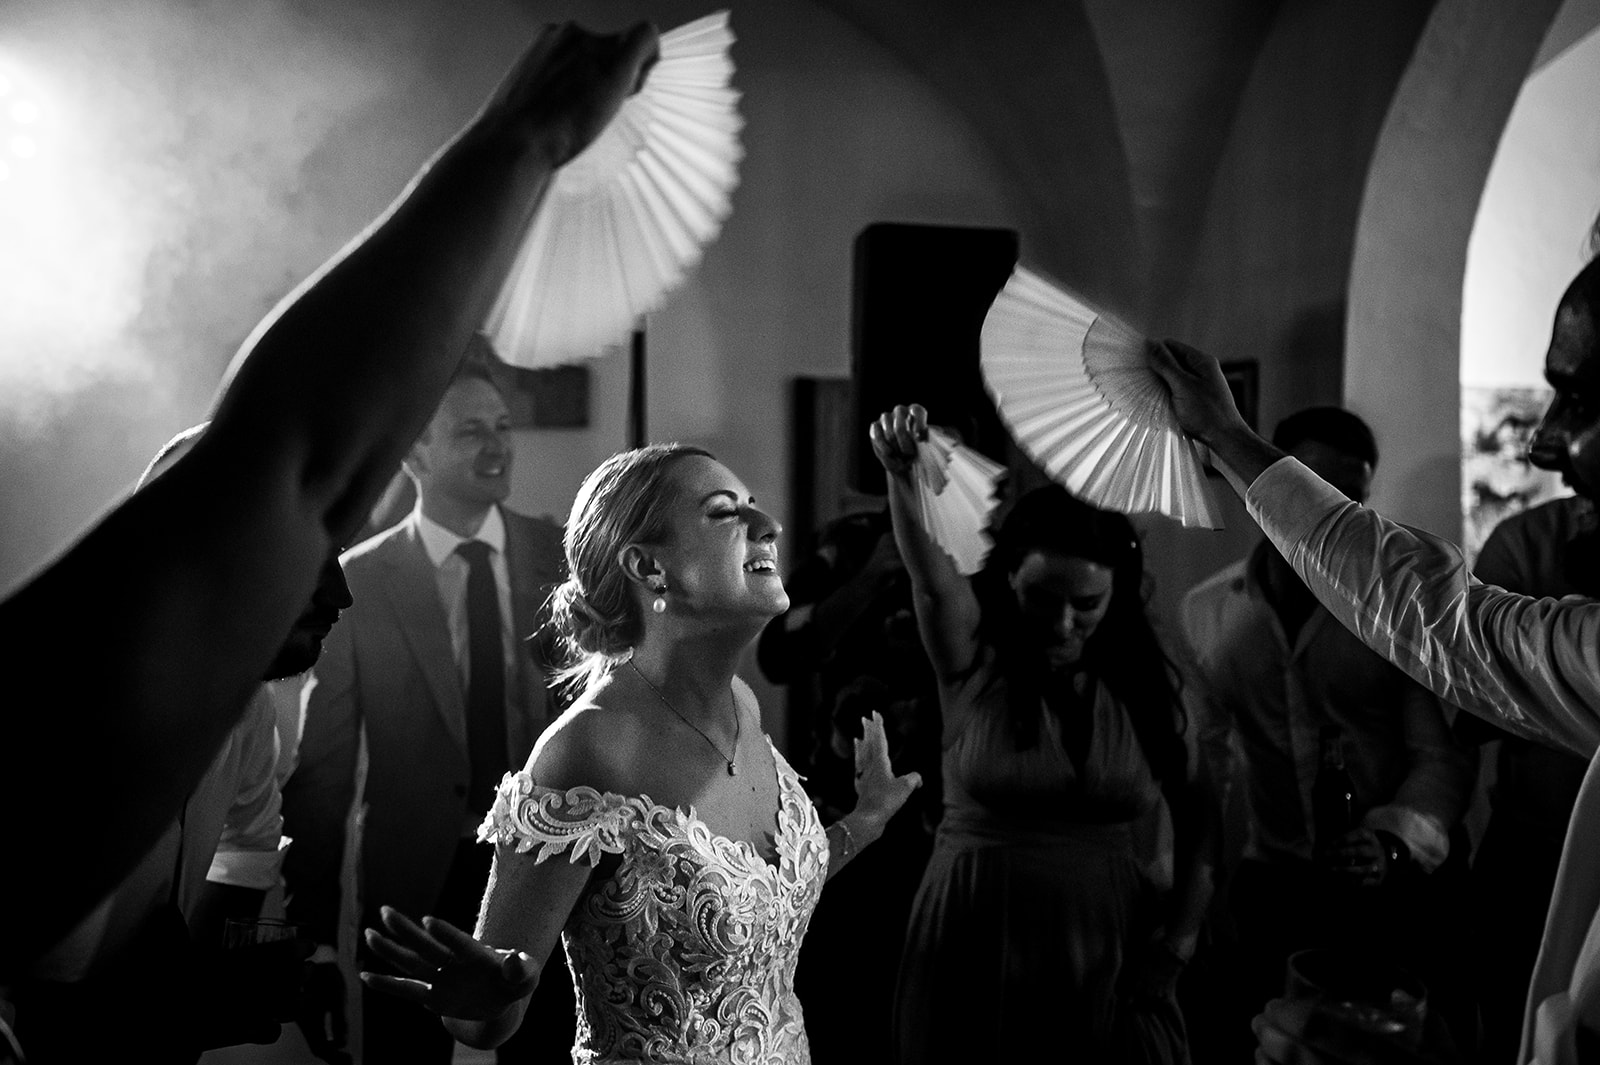 Tuscany wedding photography